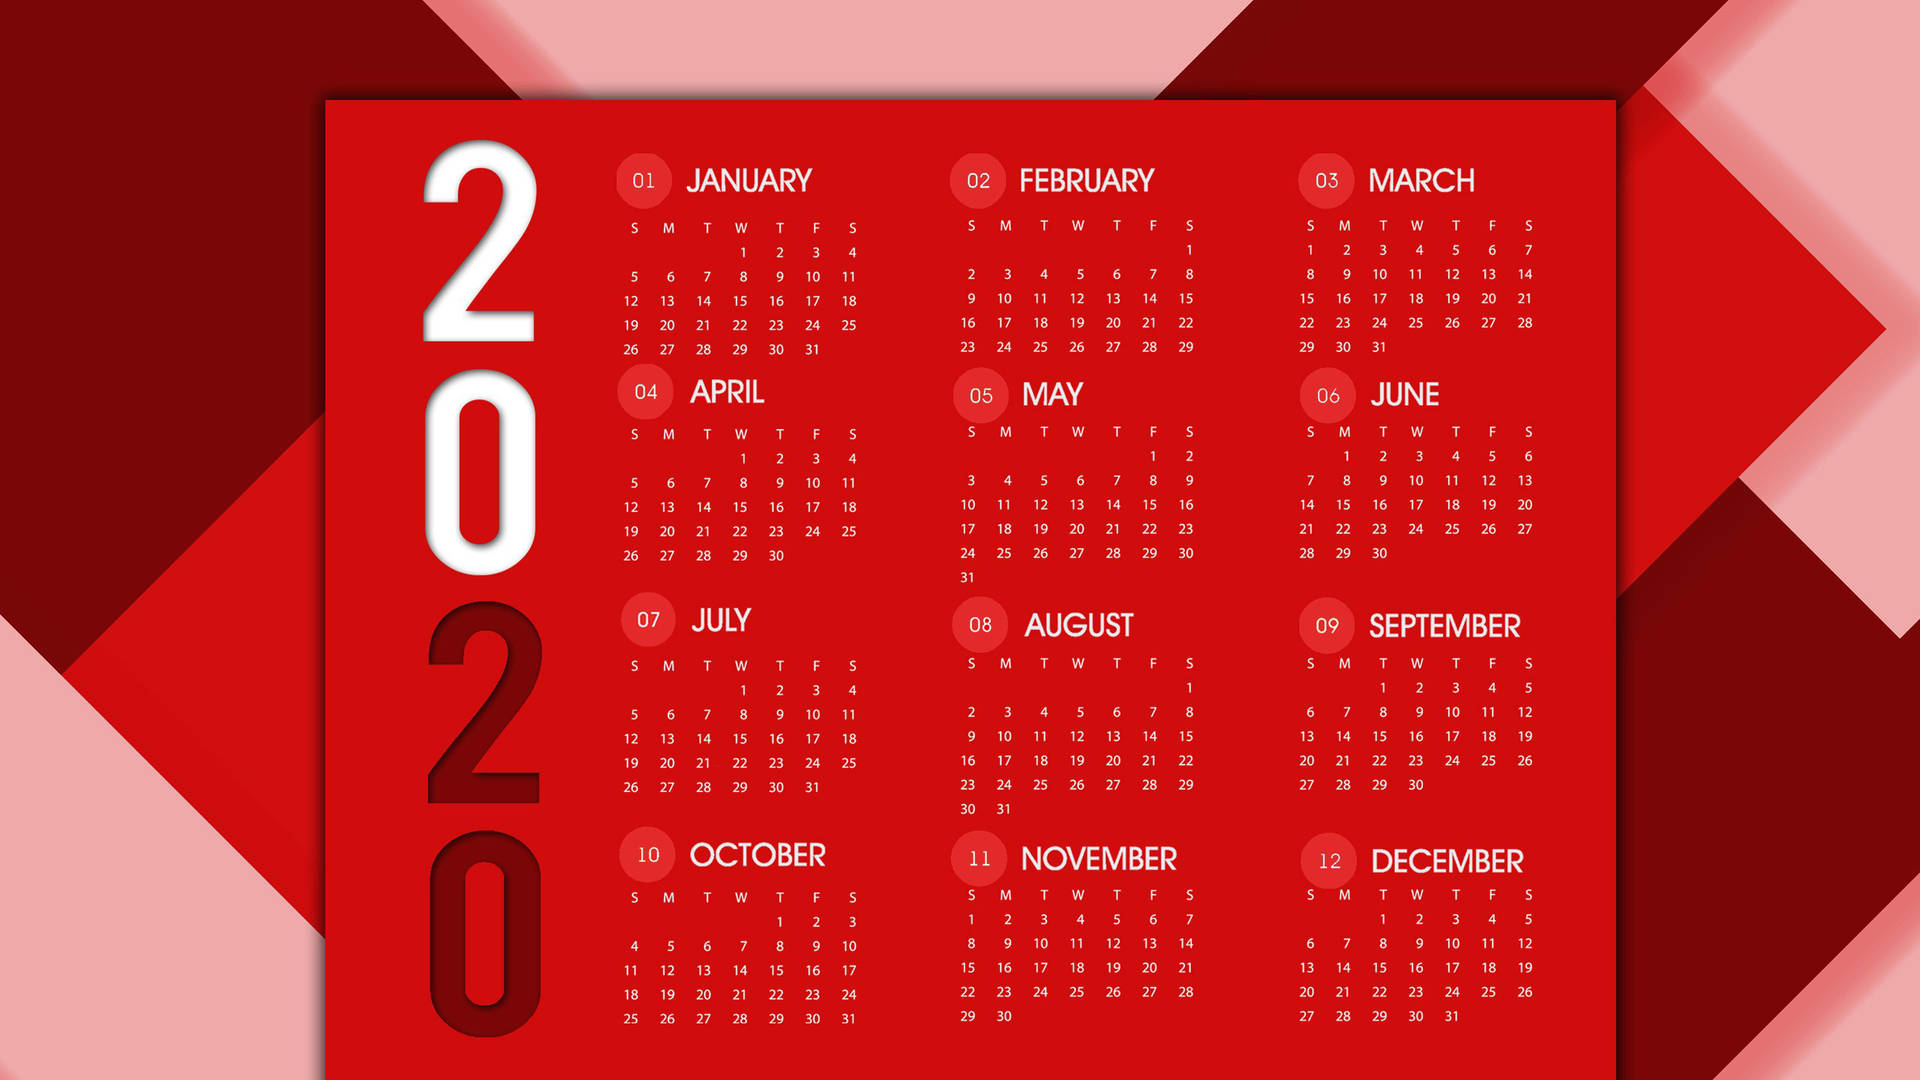 Red October 2020 Calendar Wallpaper